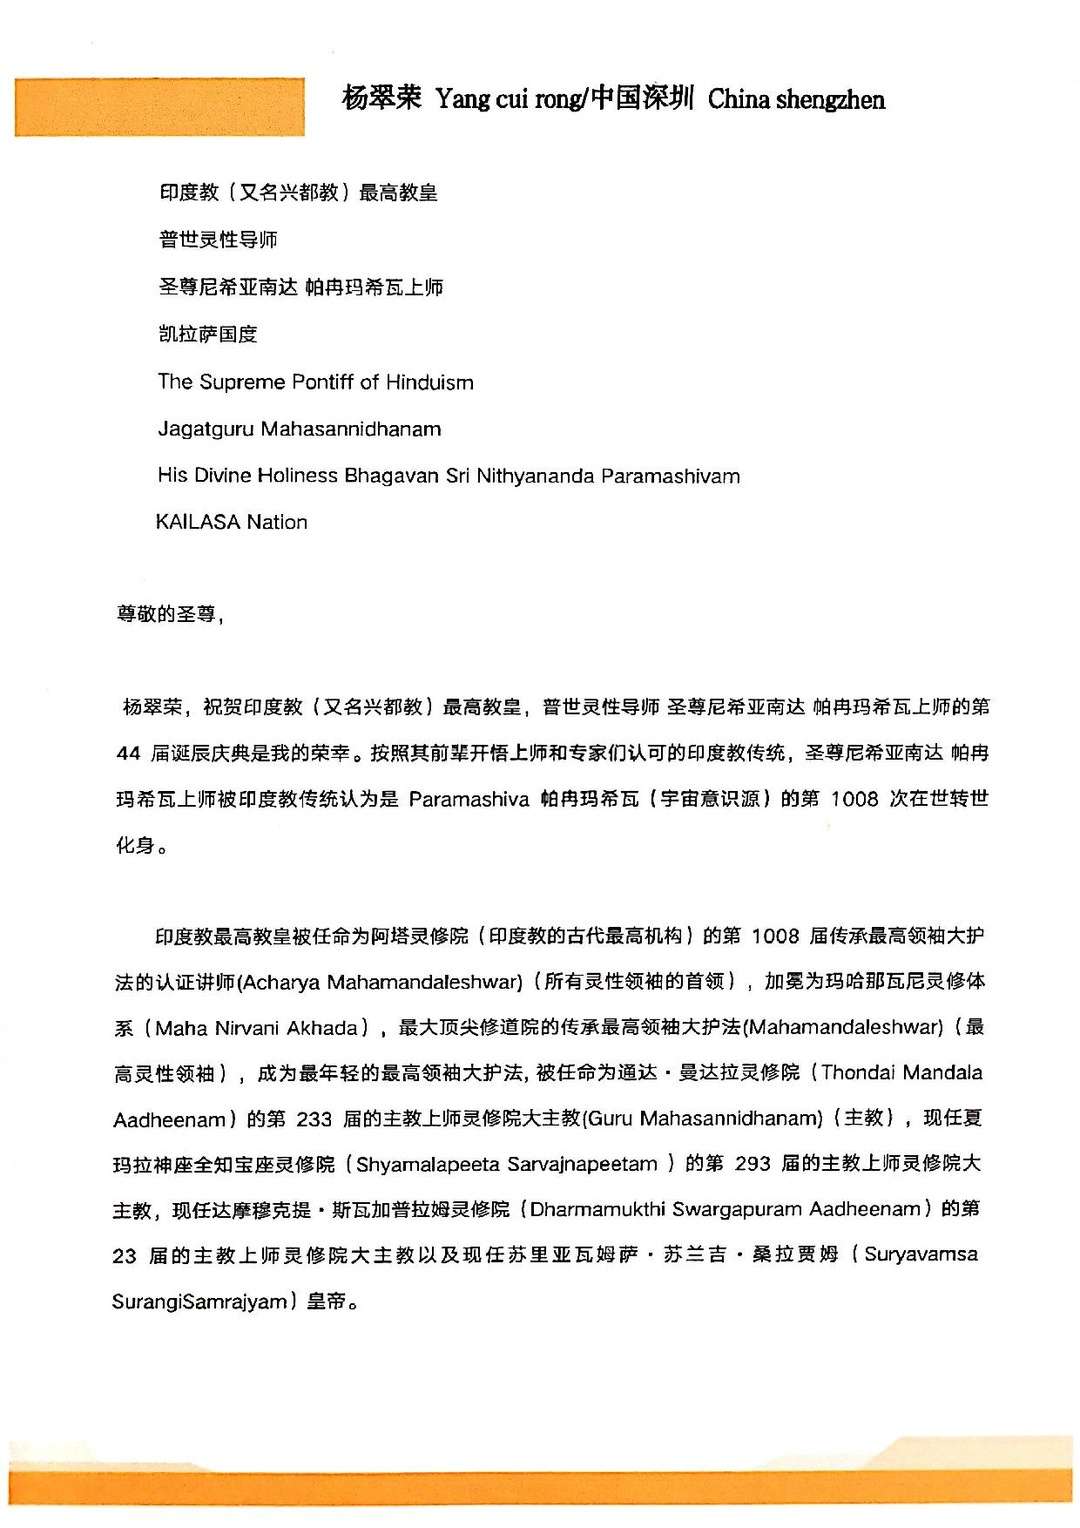 China---Cuirong-Yang---January22--2021-(Proclamation)-1 x-LsTxK-GBy1sJUC0O3HAHcMoUWEbyd.pdf